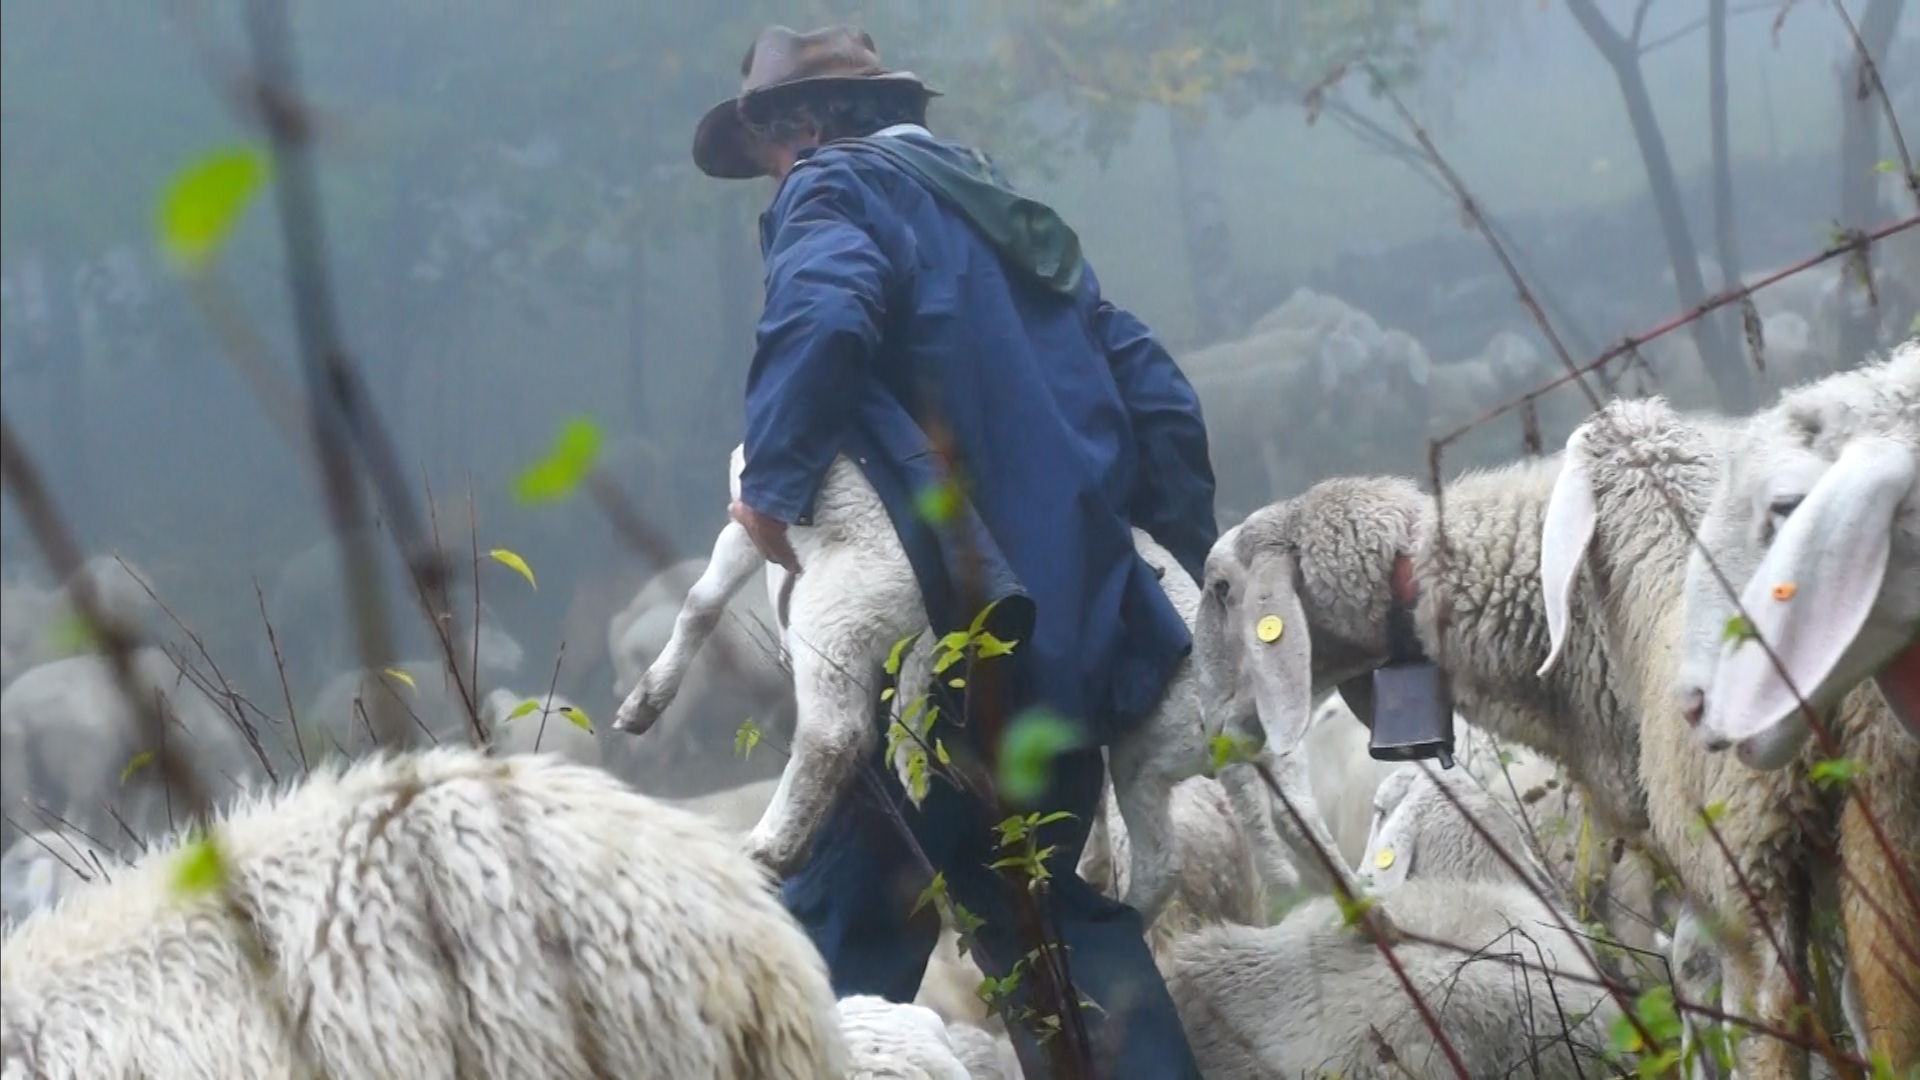 Flyer des Films: Hirten - Seelen Landhschaft Herde, von Mia Leu